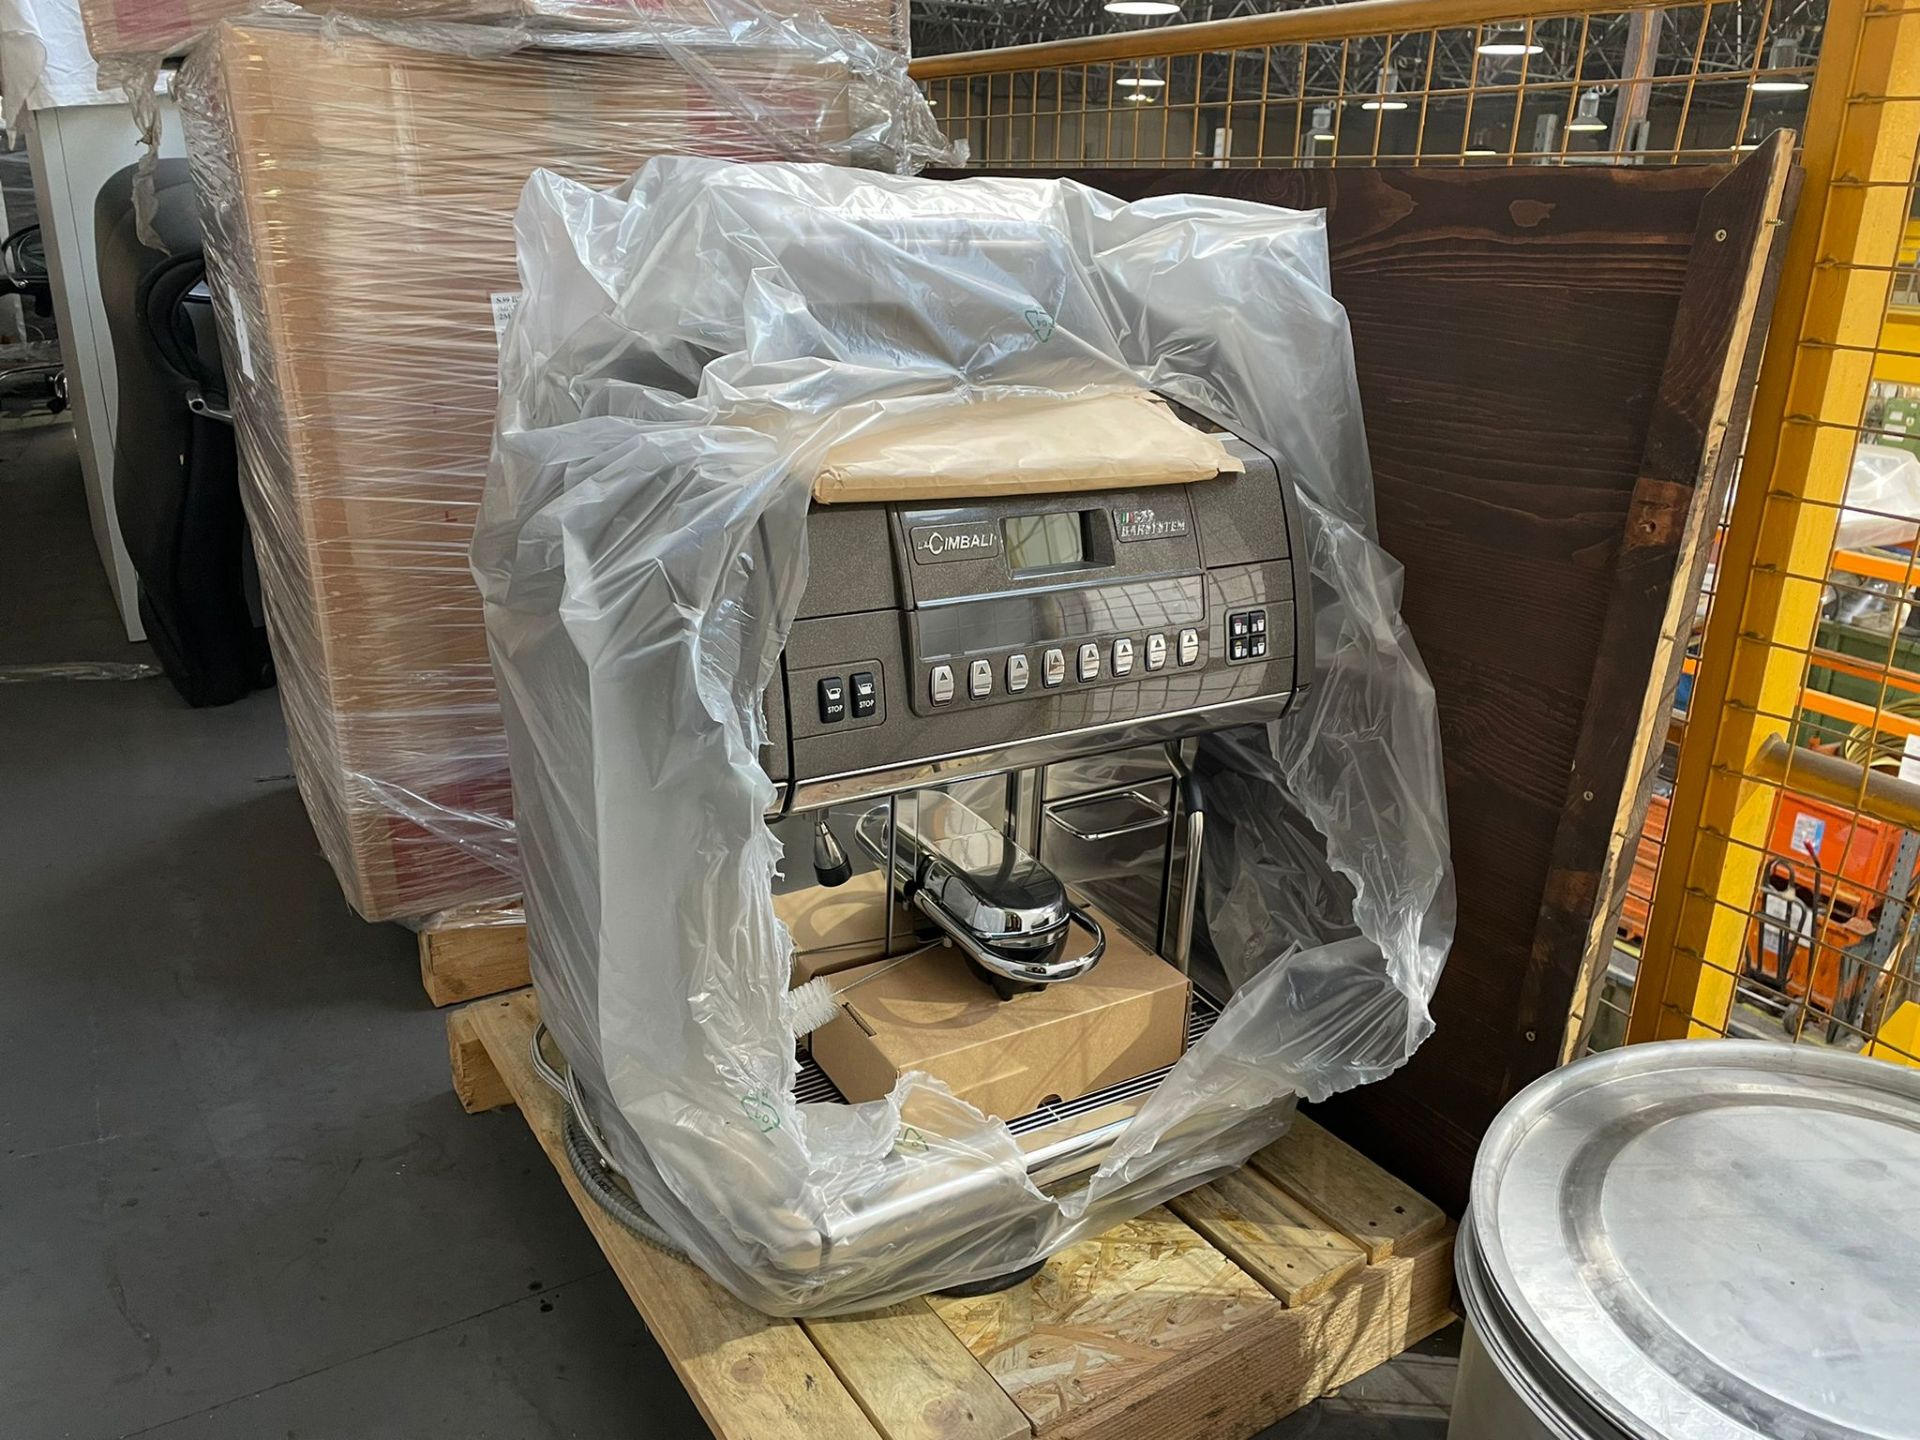 CIMBALI S39 COFFEE MACHINE (NEW) - Image 2 of 4